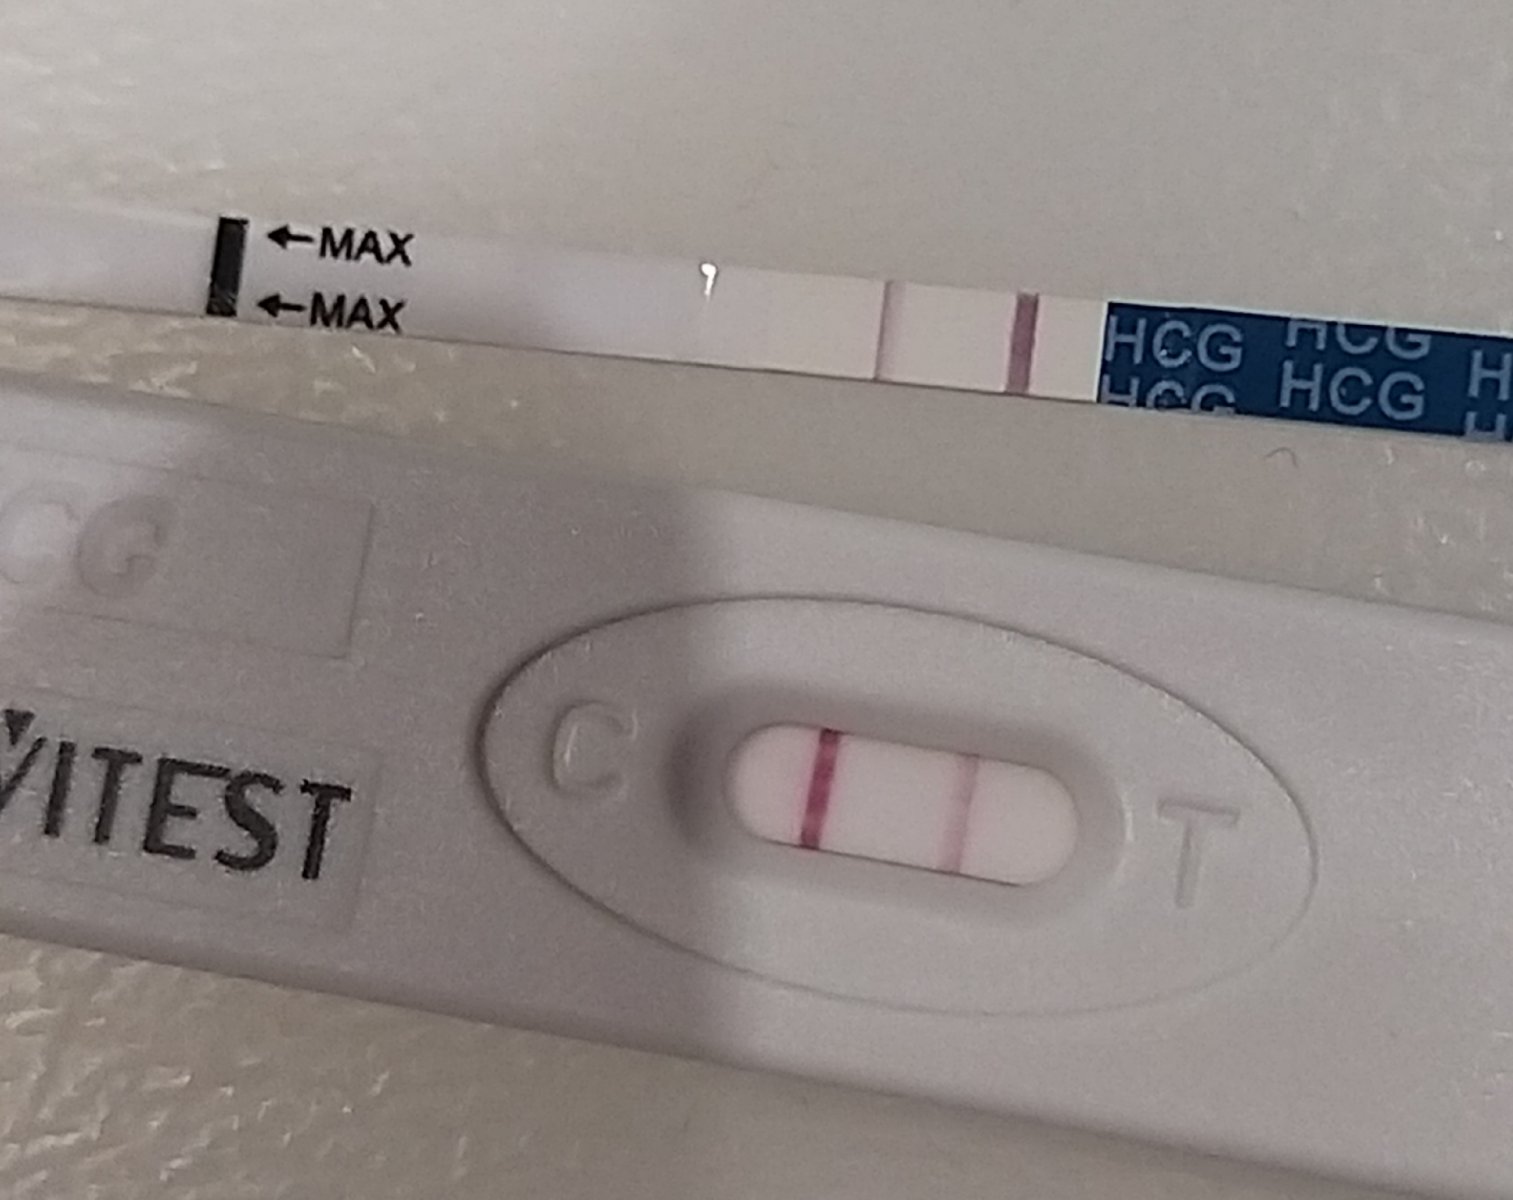 Положительный тест на беременность